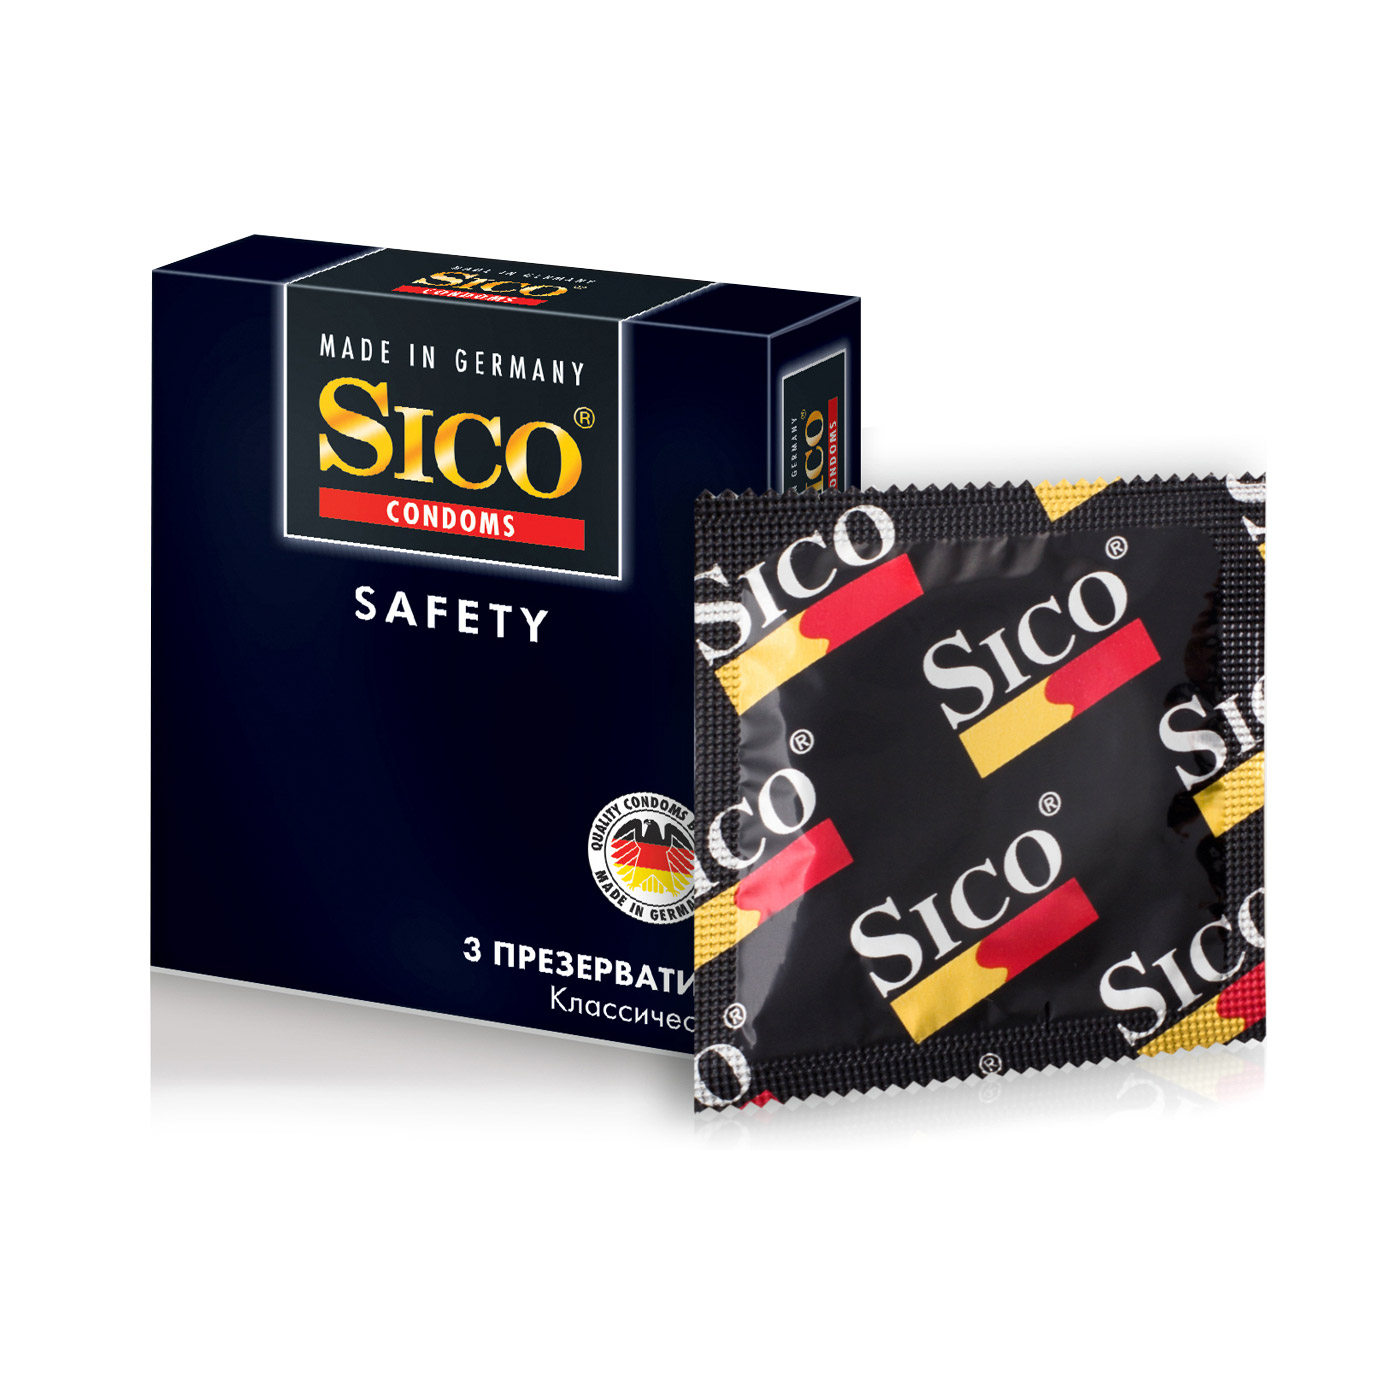 Презервативы SICO Safety 3шт sico презервативы 3 pearl sico sico презервативы